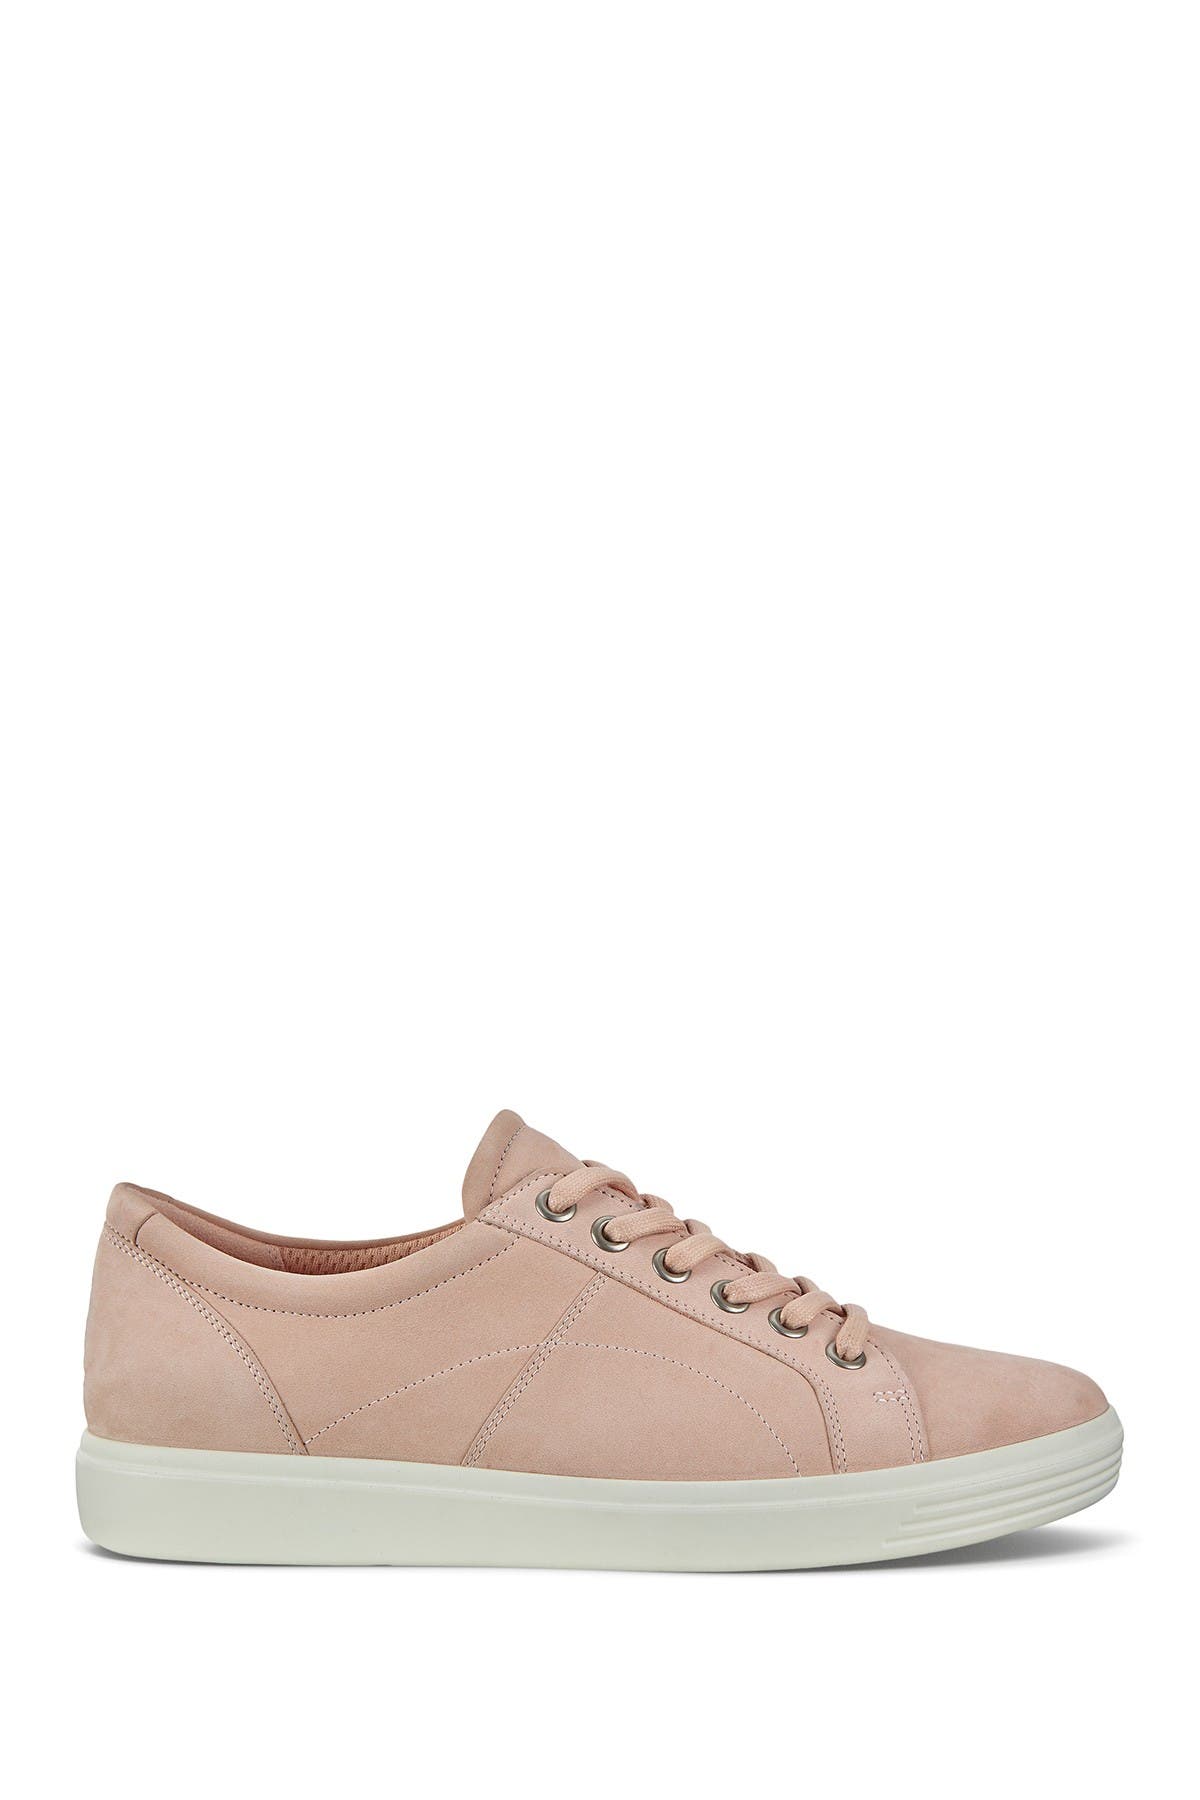 Ecco Soft Sneaker In Rose Dust